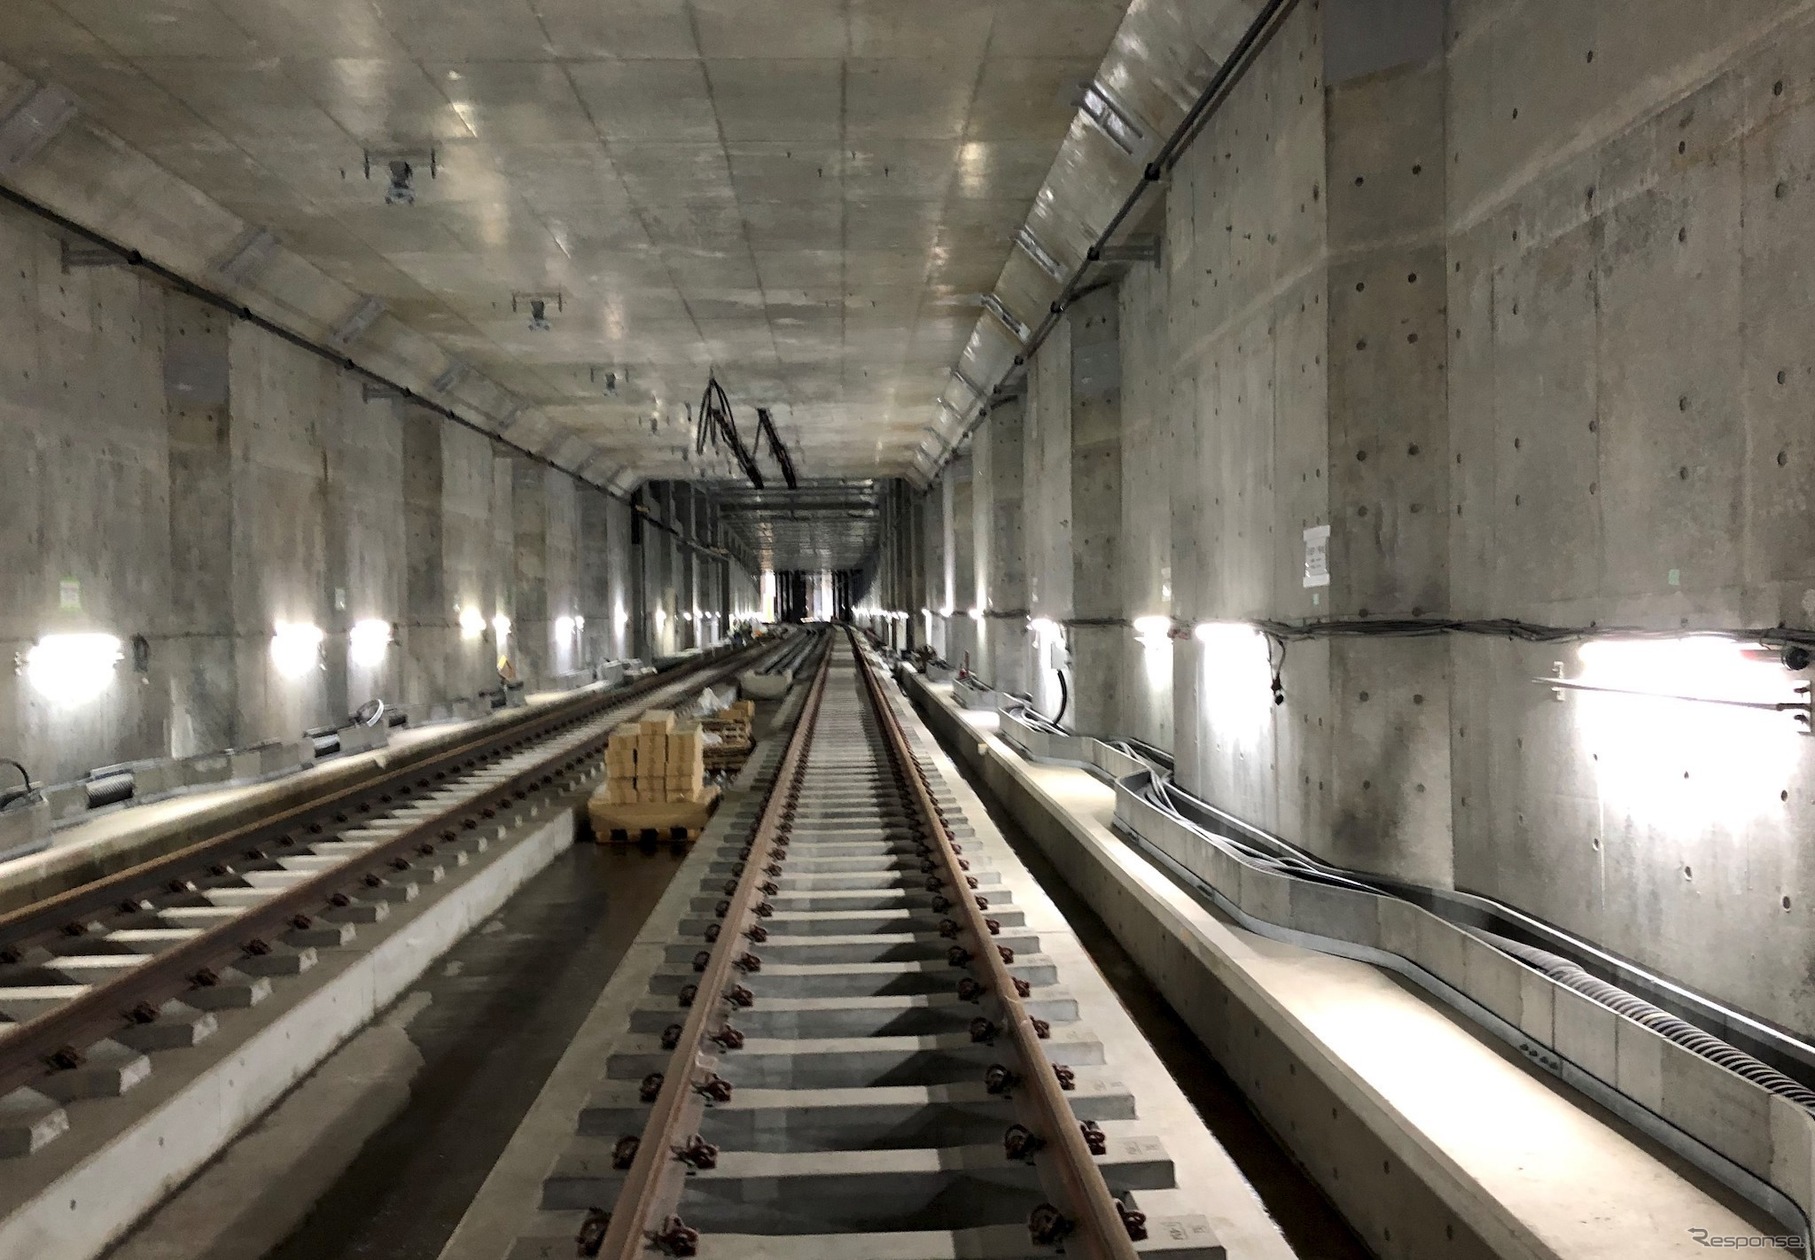 新綱島～日吉間にある綱島トンネルの工事状況。